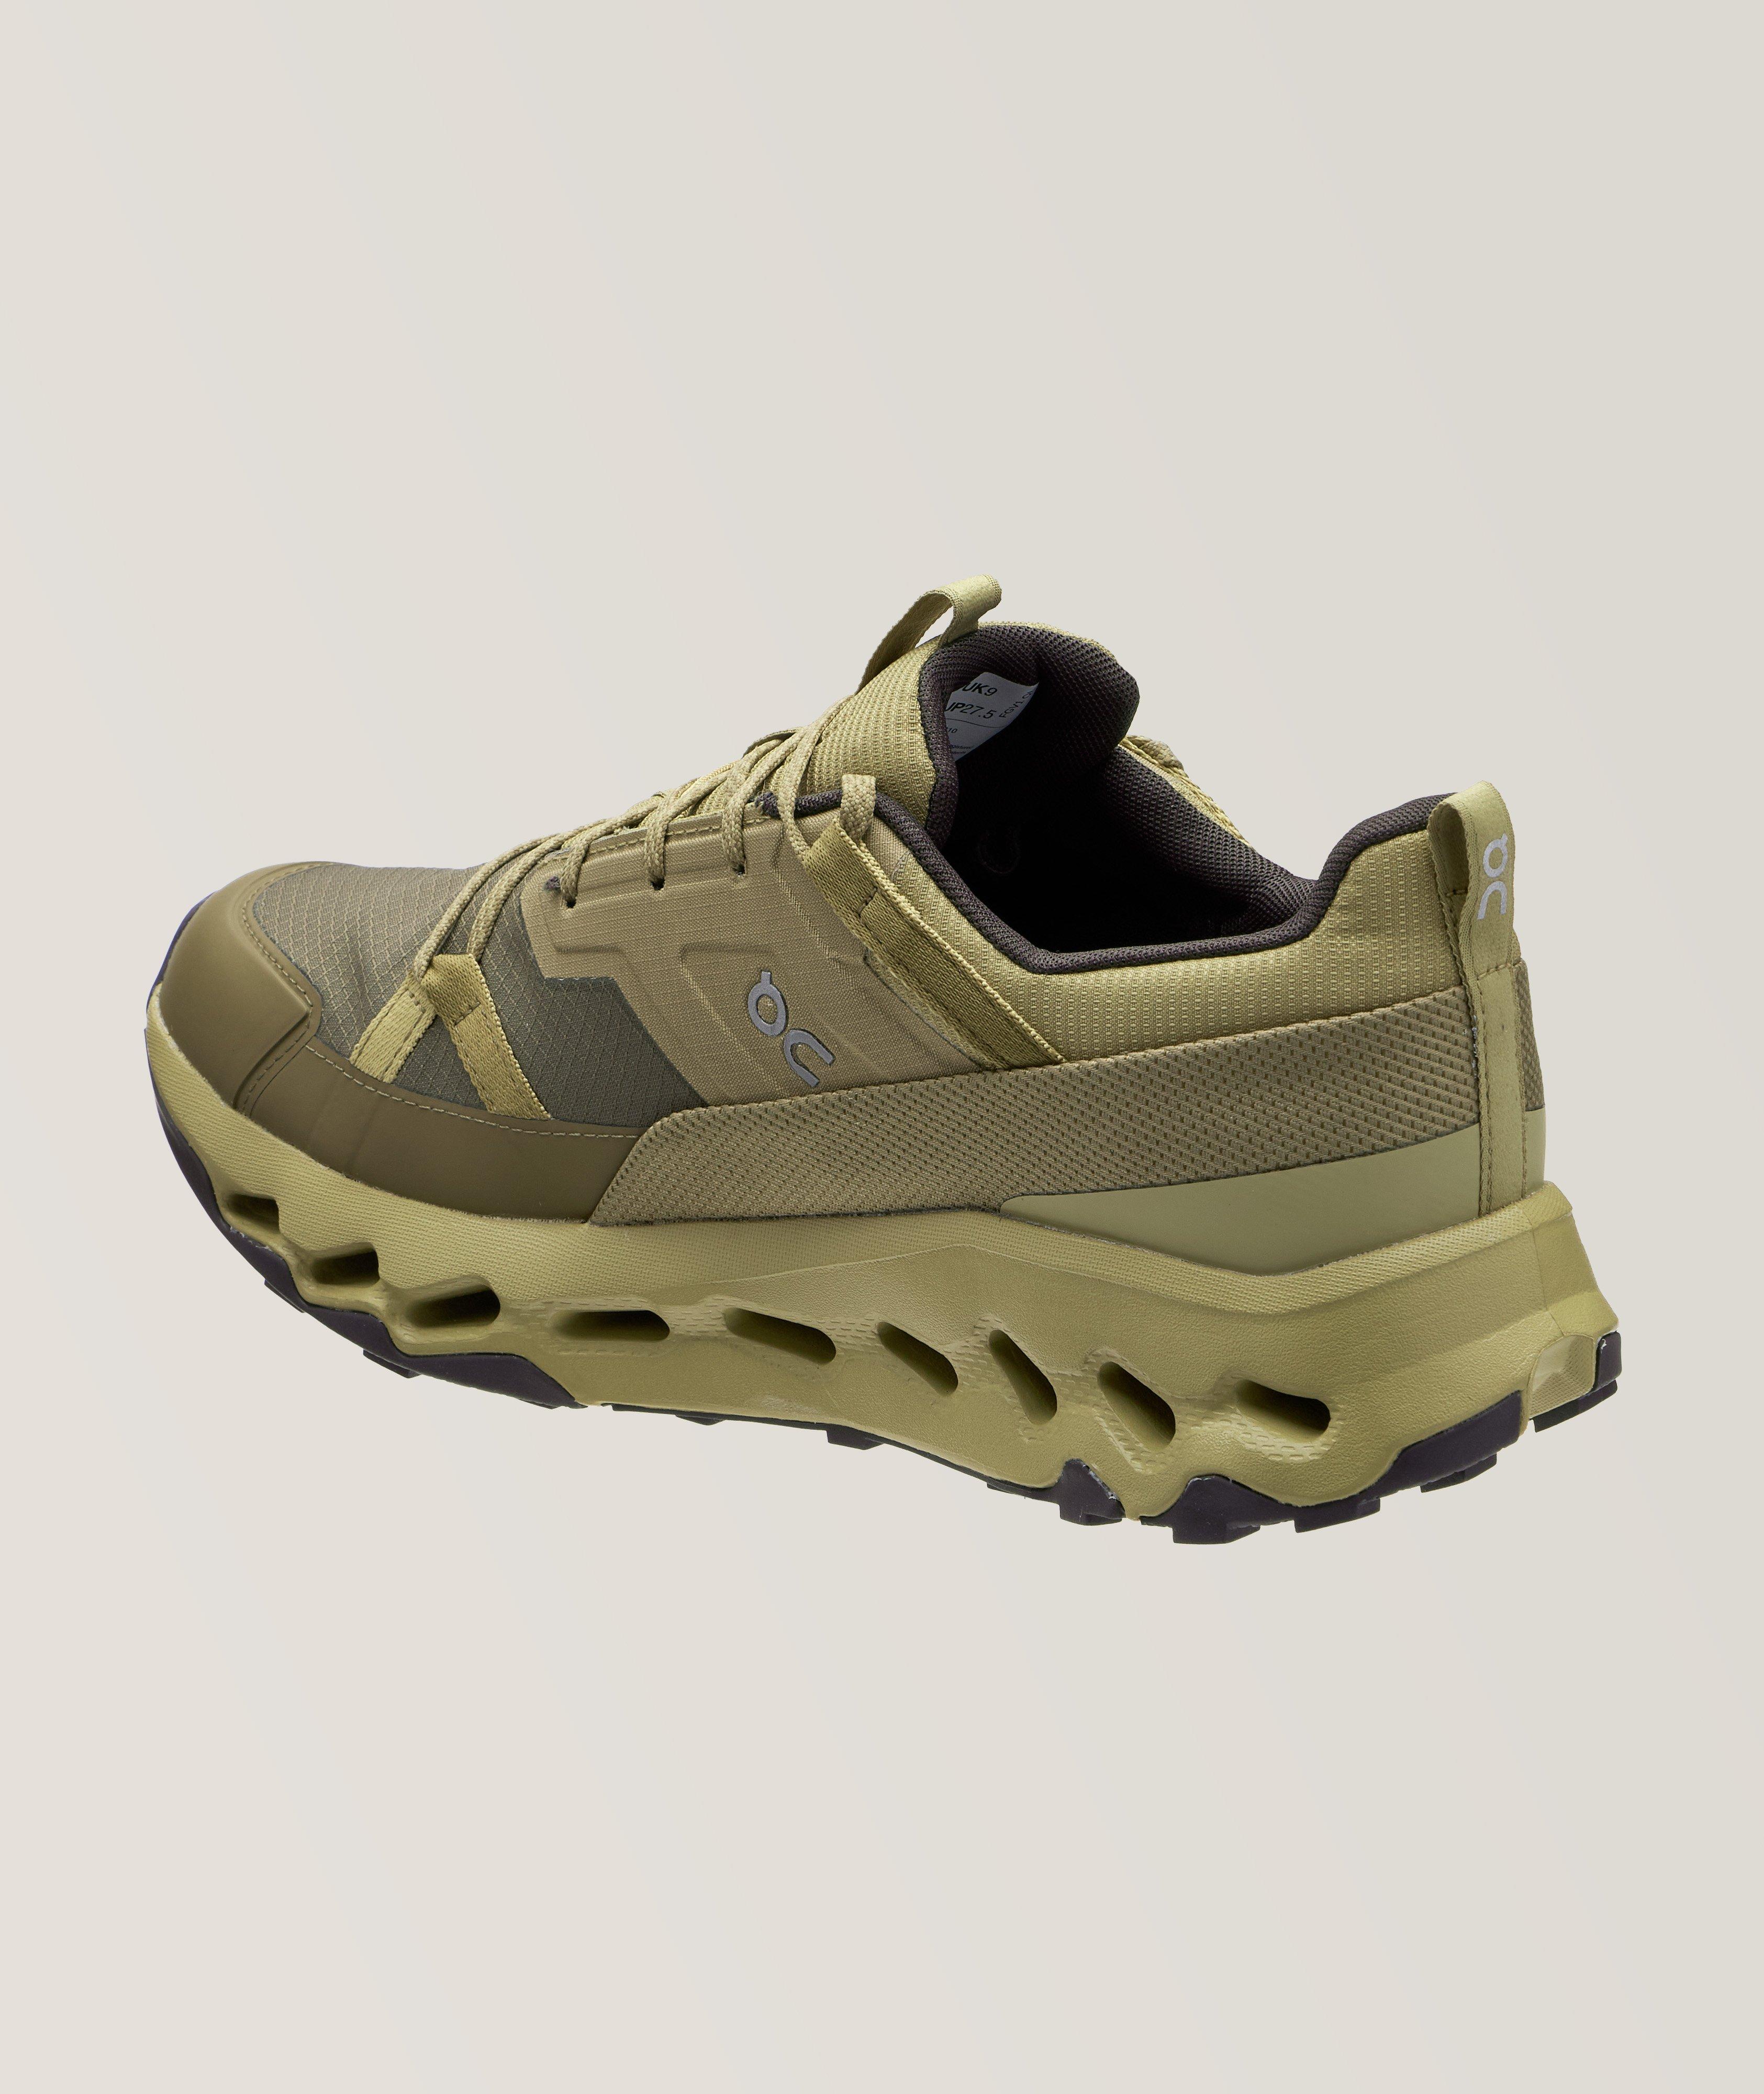 Chaussure sport Cloudhorizon aux textures variées image 1